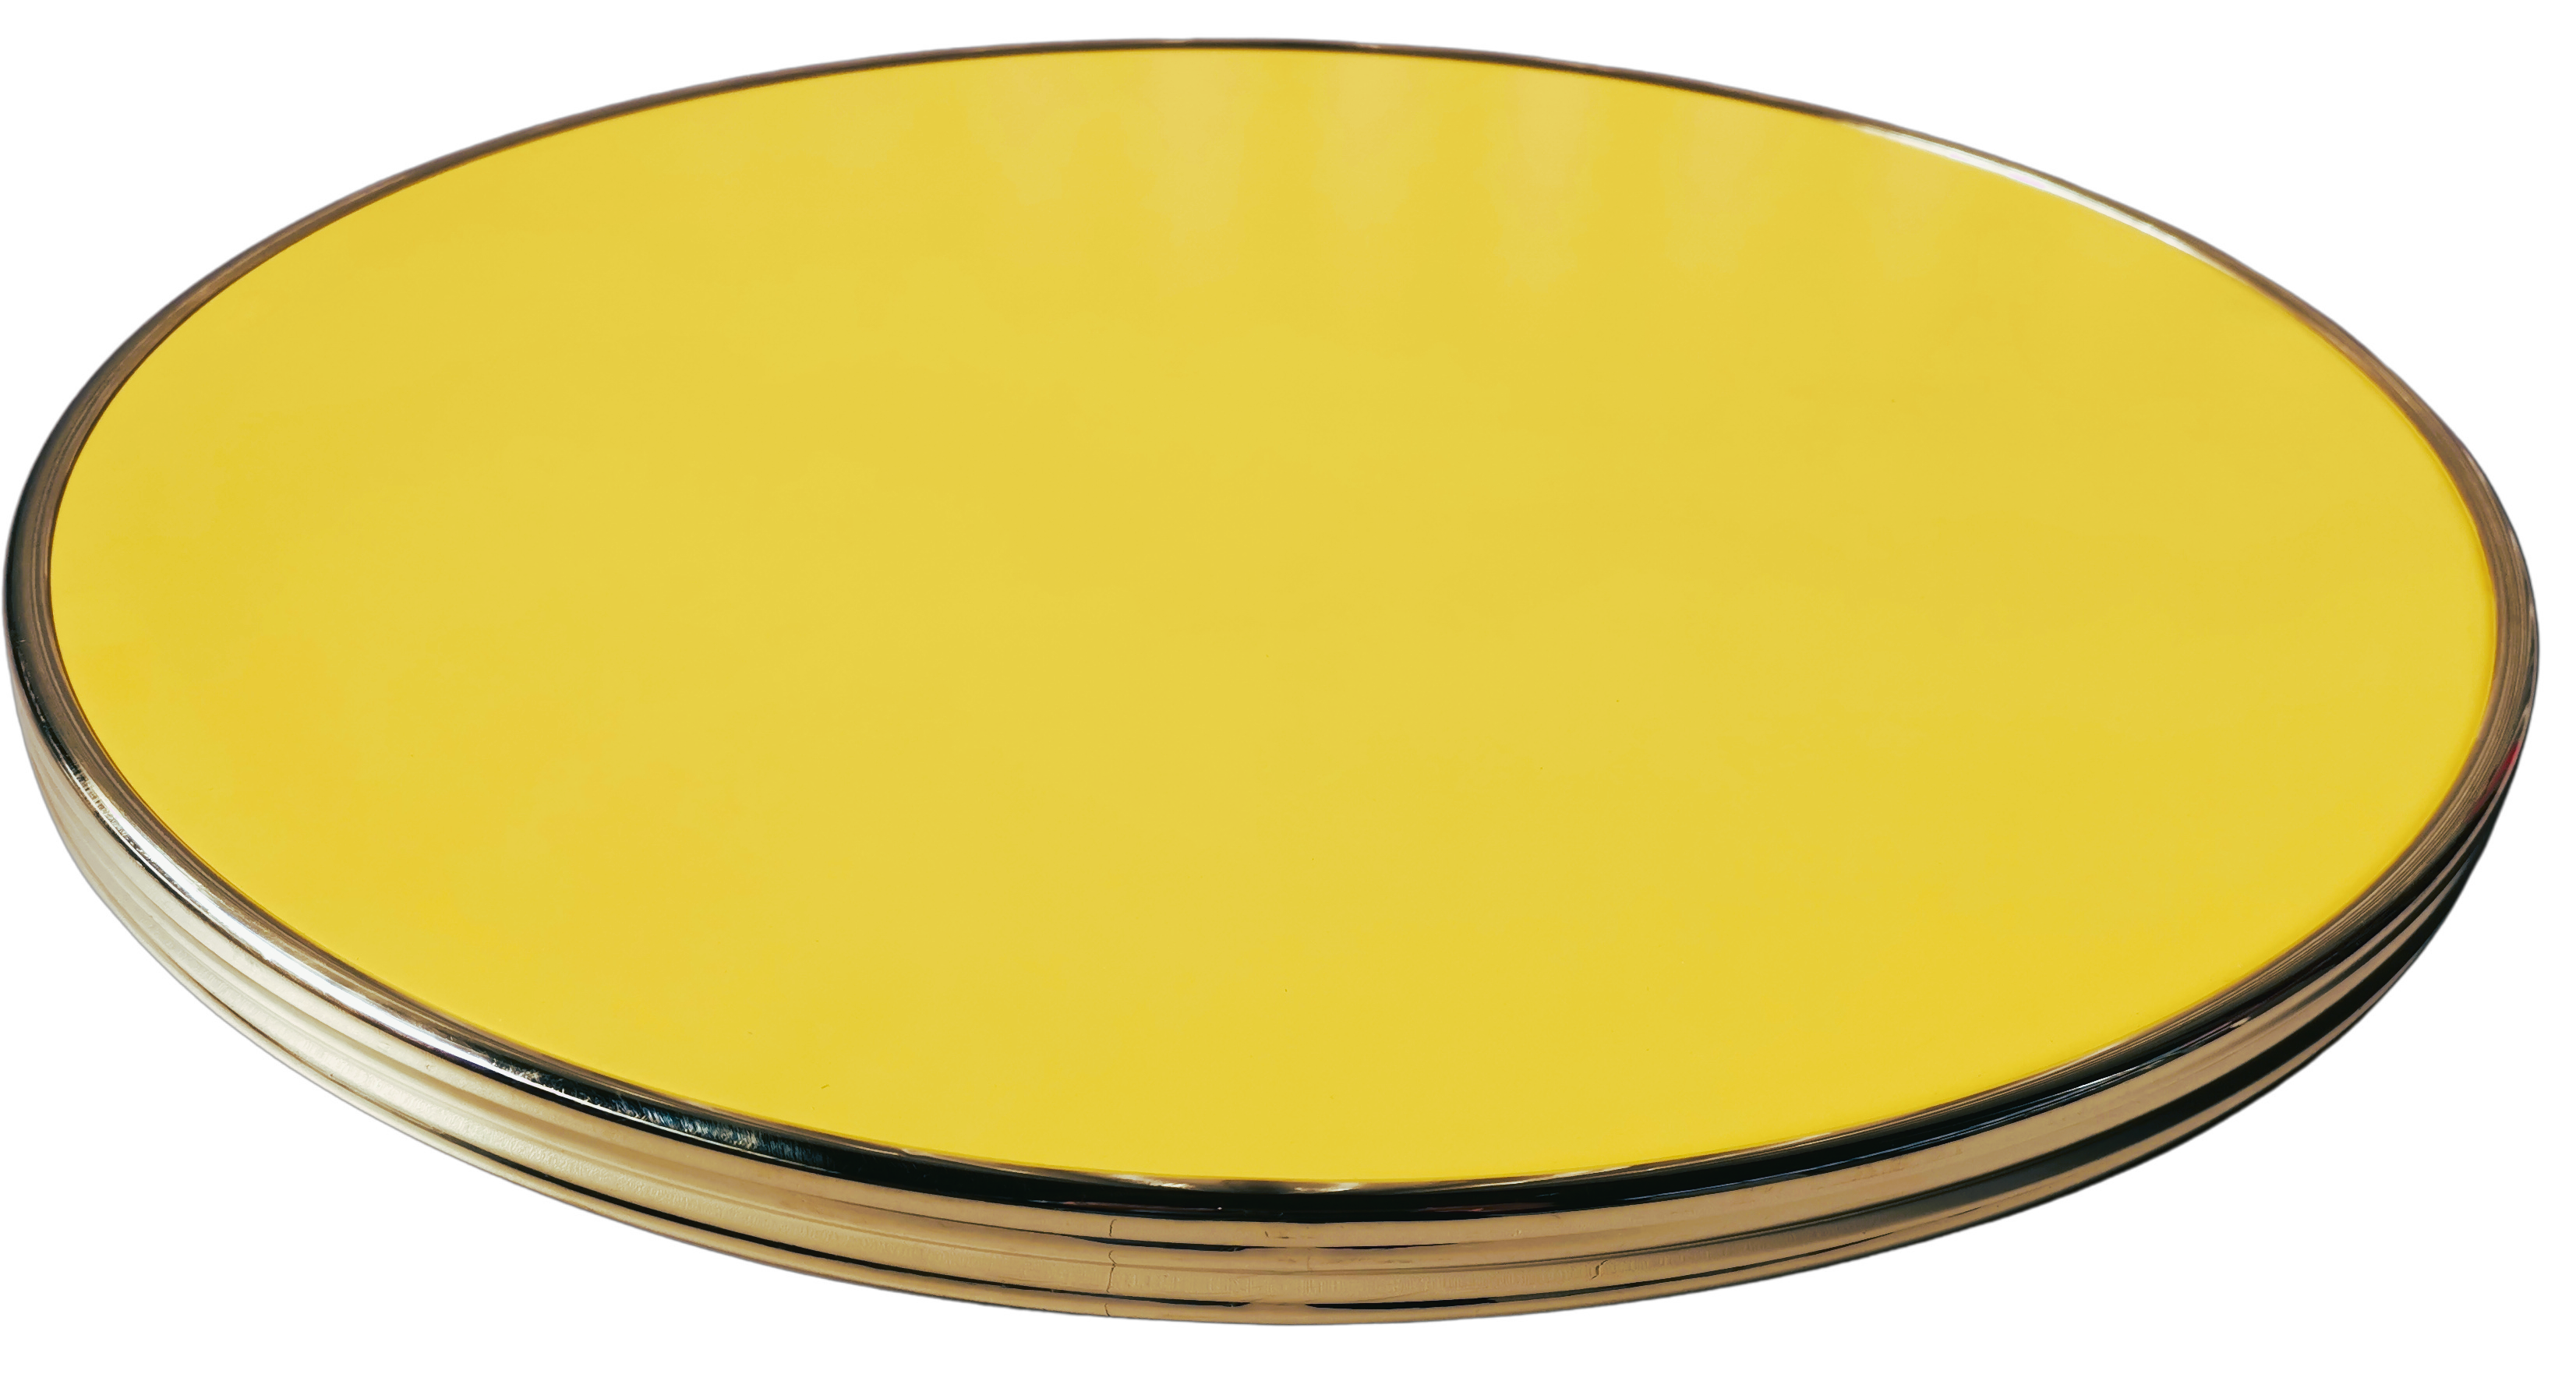 Table bistrot jaune Sunny cerclé laiton D60cm